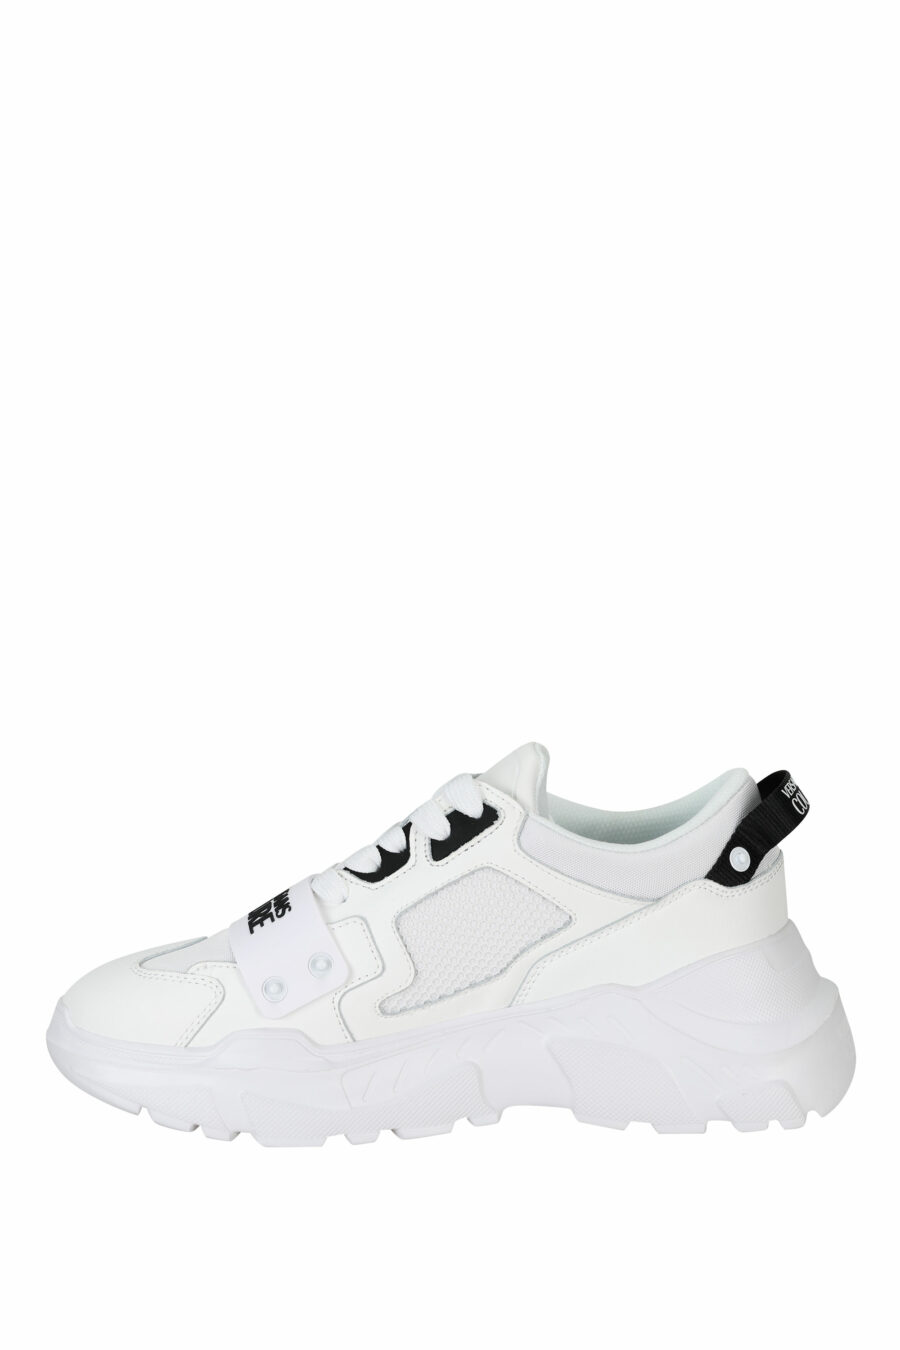 Weiße "Speedtrack"-Schuhe mit schwarzem Gummi-Mini-Logo auf der Vorderseite - 8052019604337 2